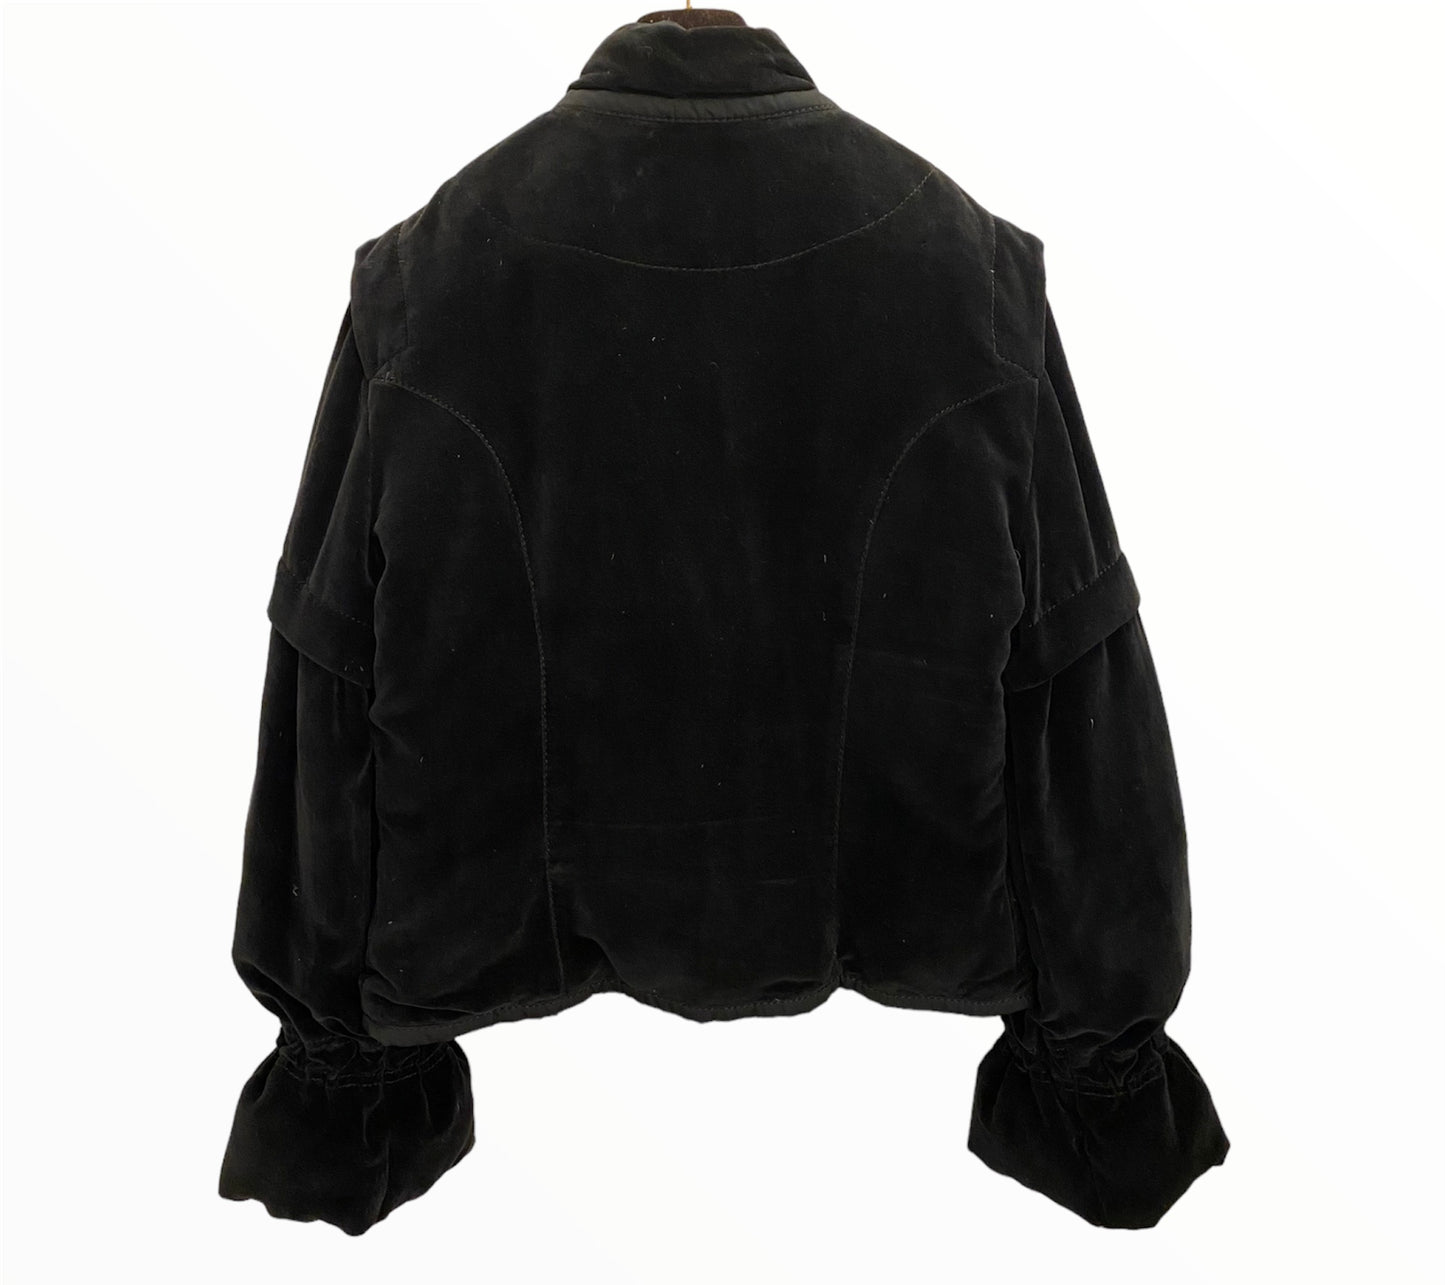 LOUIS VUITTON Velvet Black Jacket Size It 42 Eu S